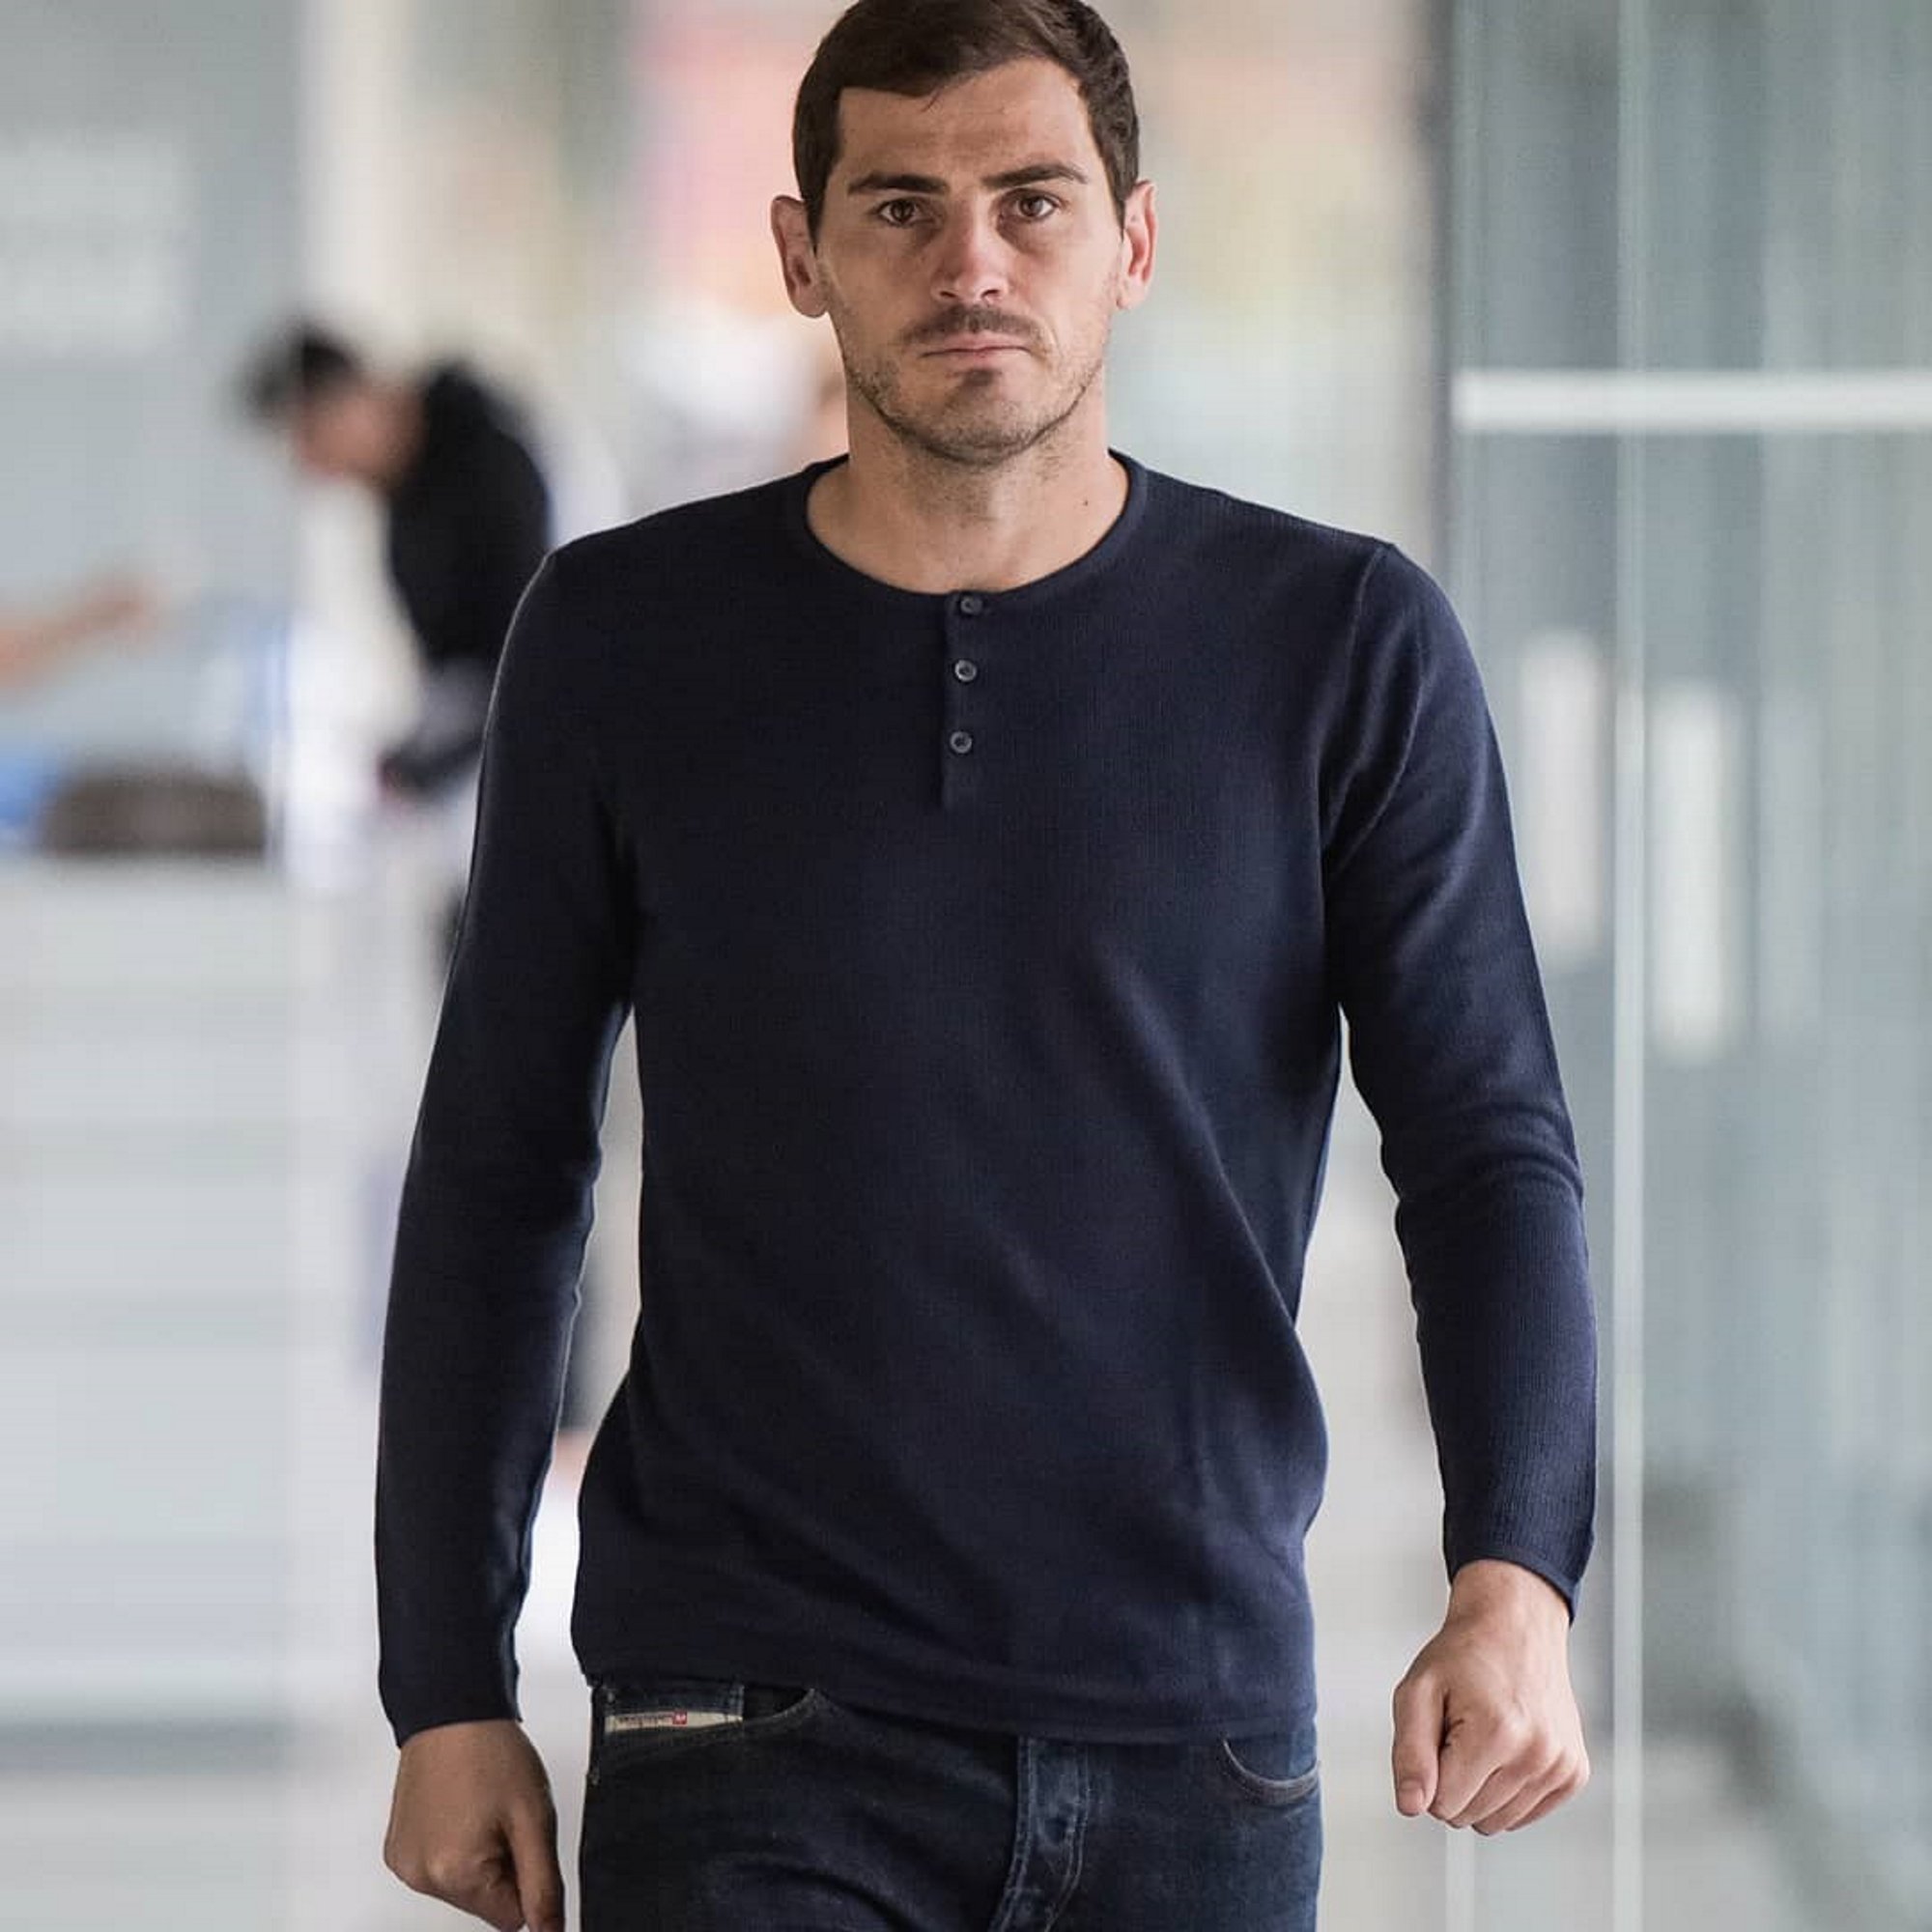 Tebas quiere que Casillas sea el próximo presidente de la Federación Española